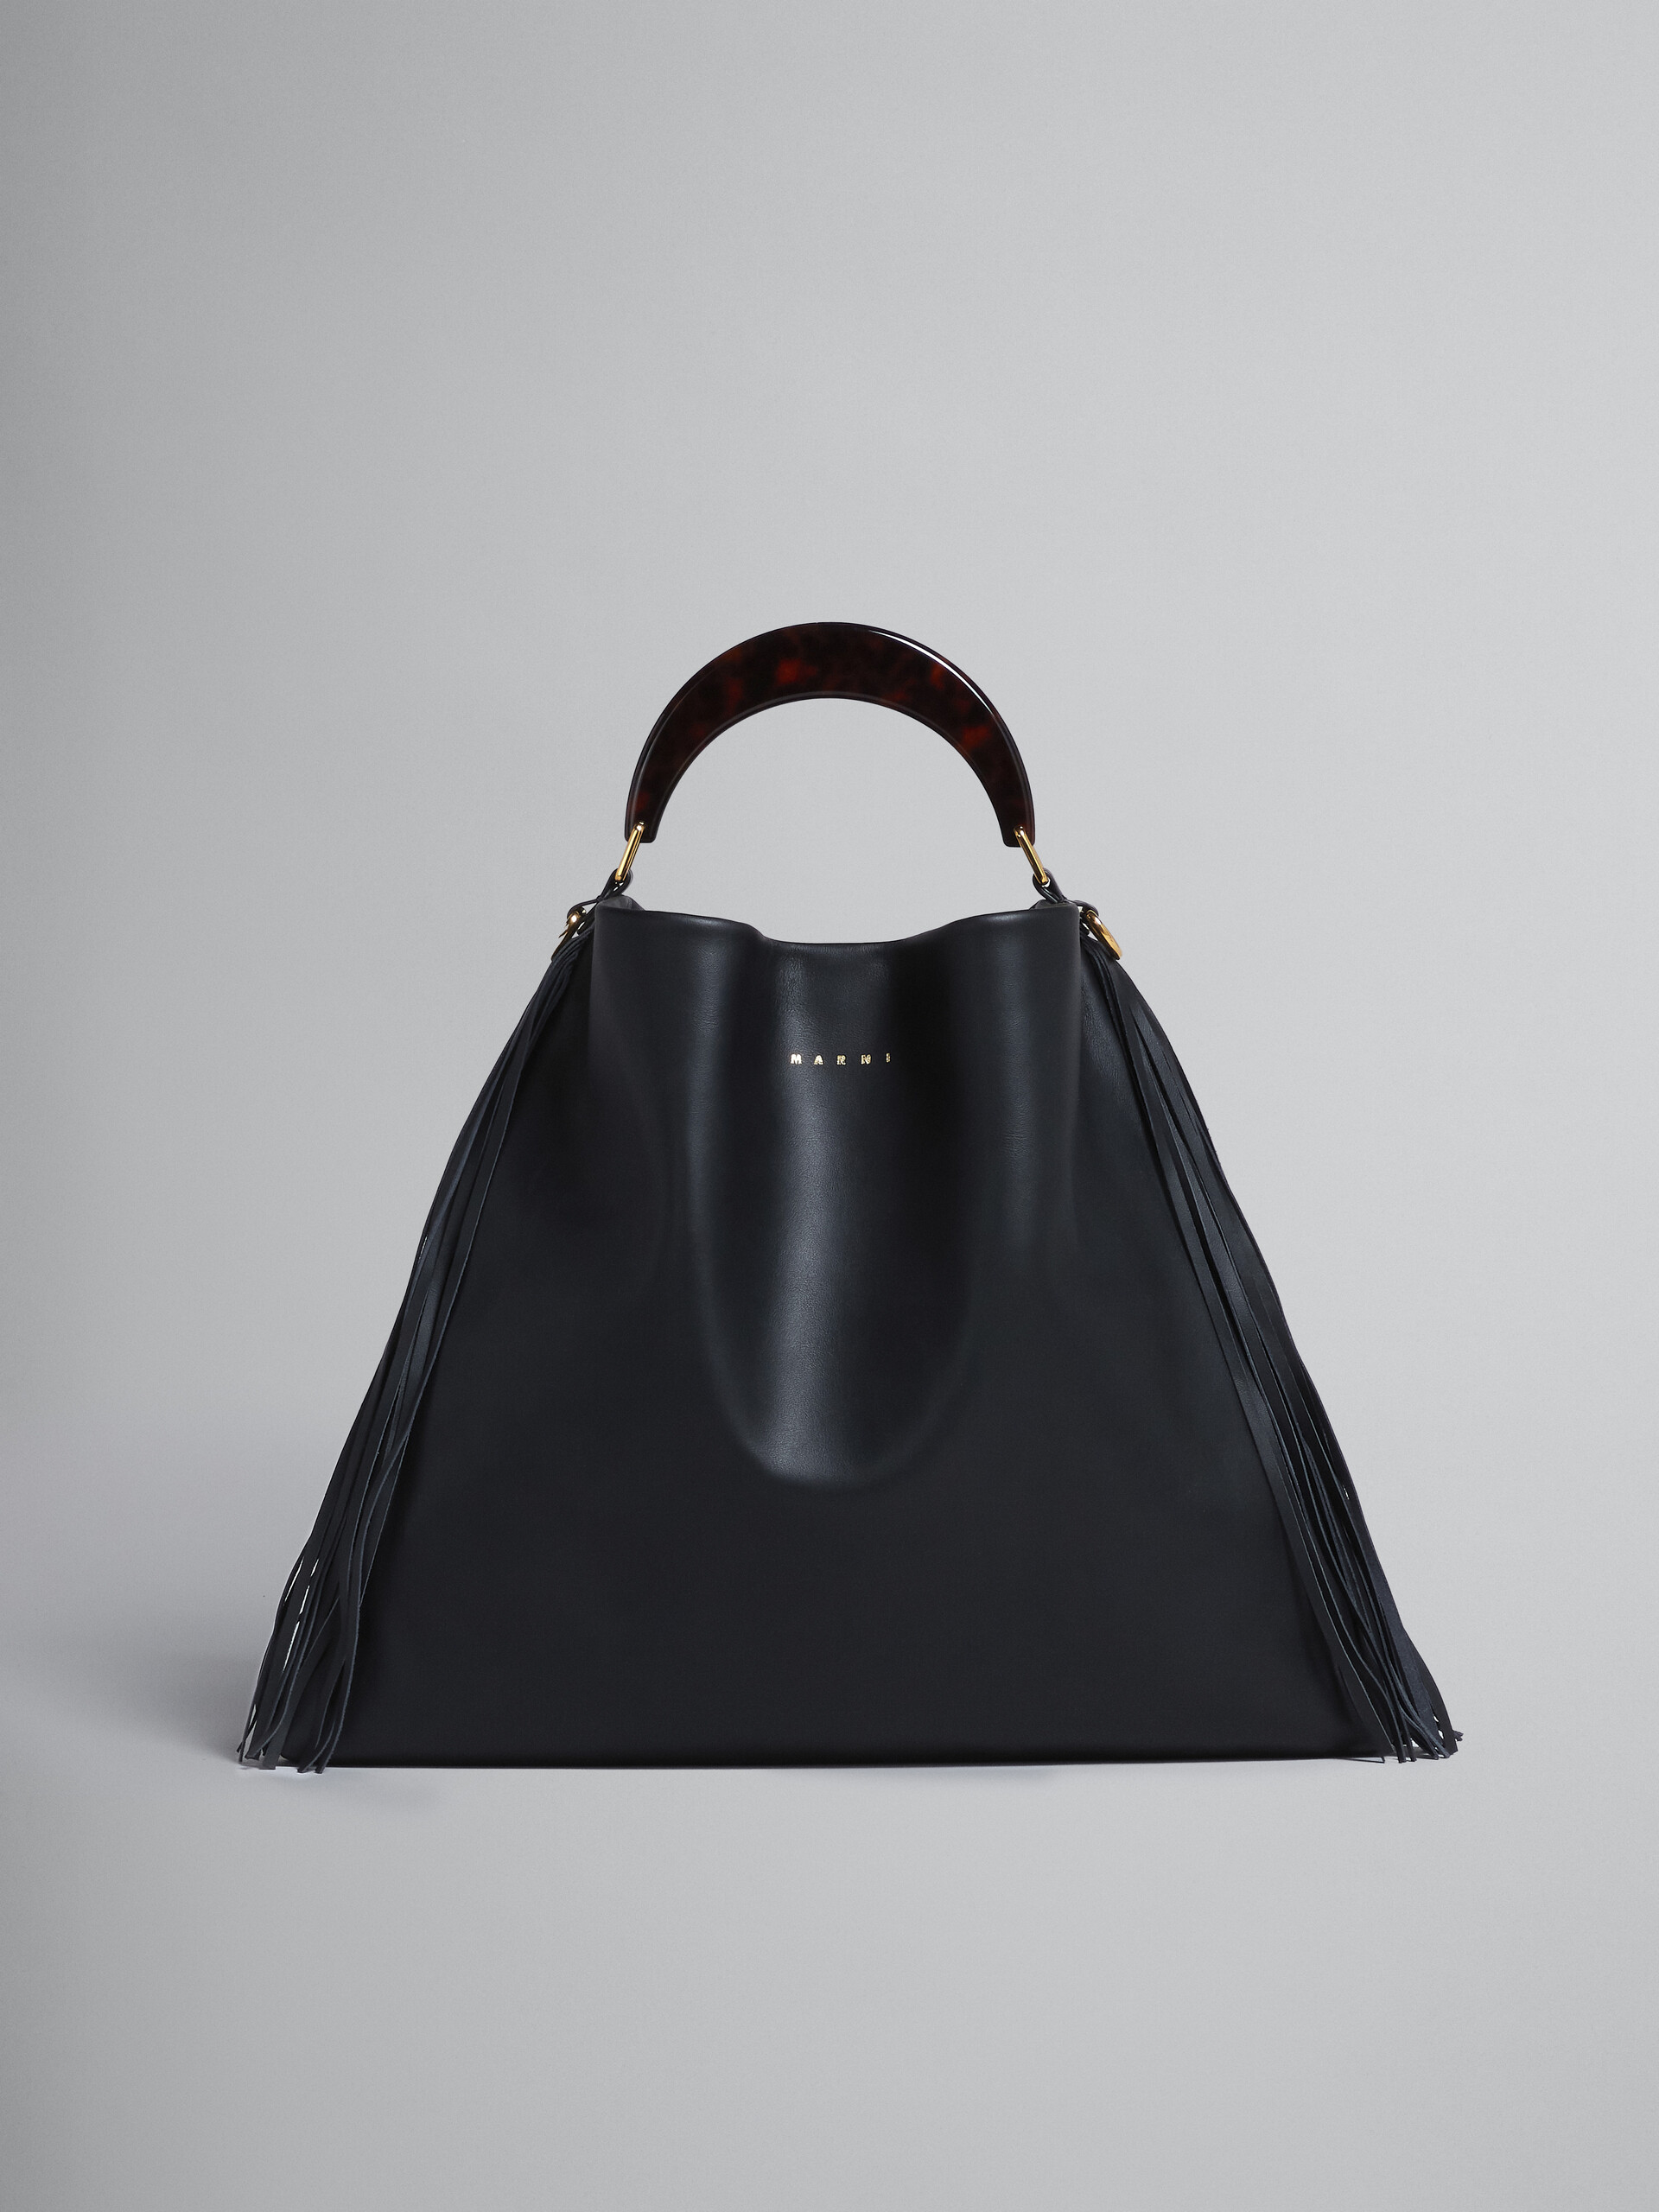 Venice Medium Bag in black leather with fringes - Shoulder Bag - Image 1